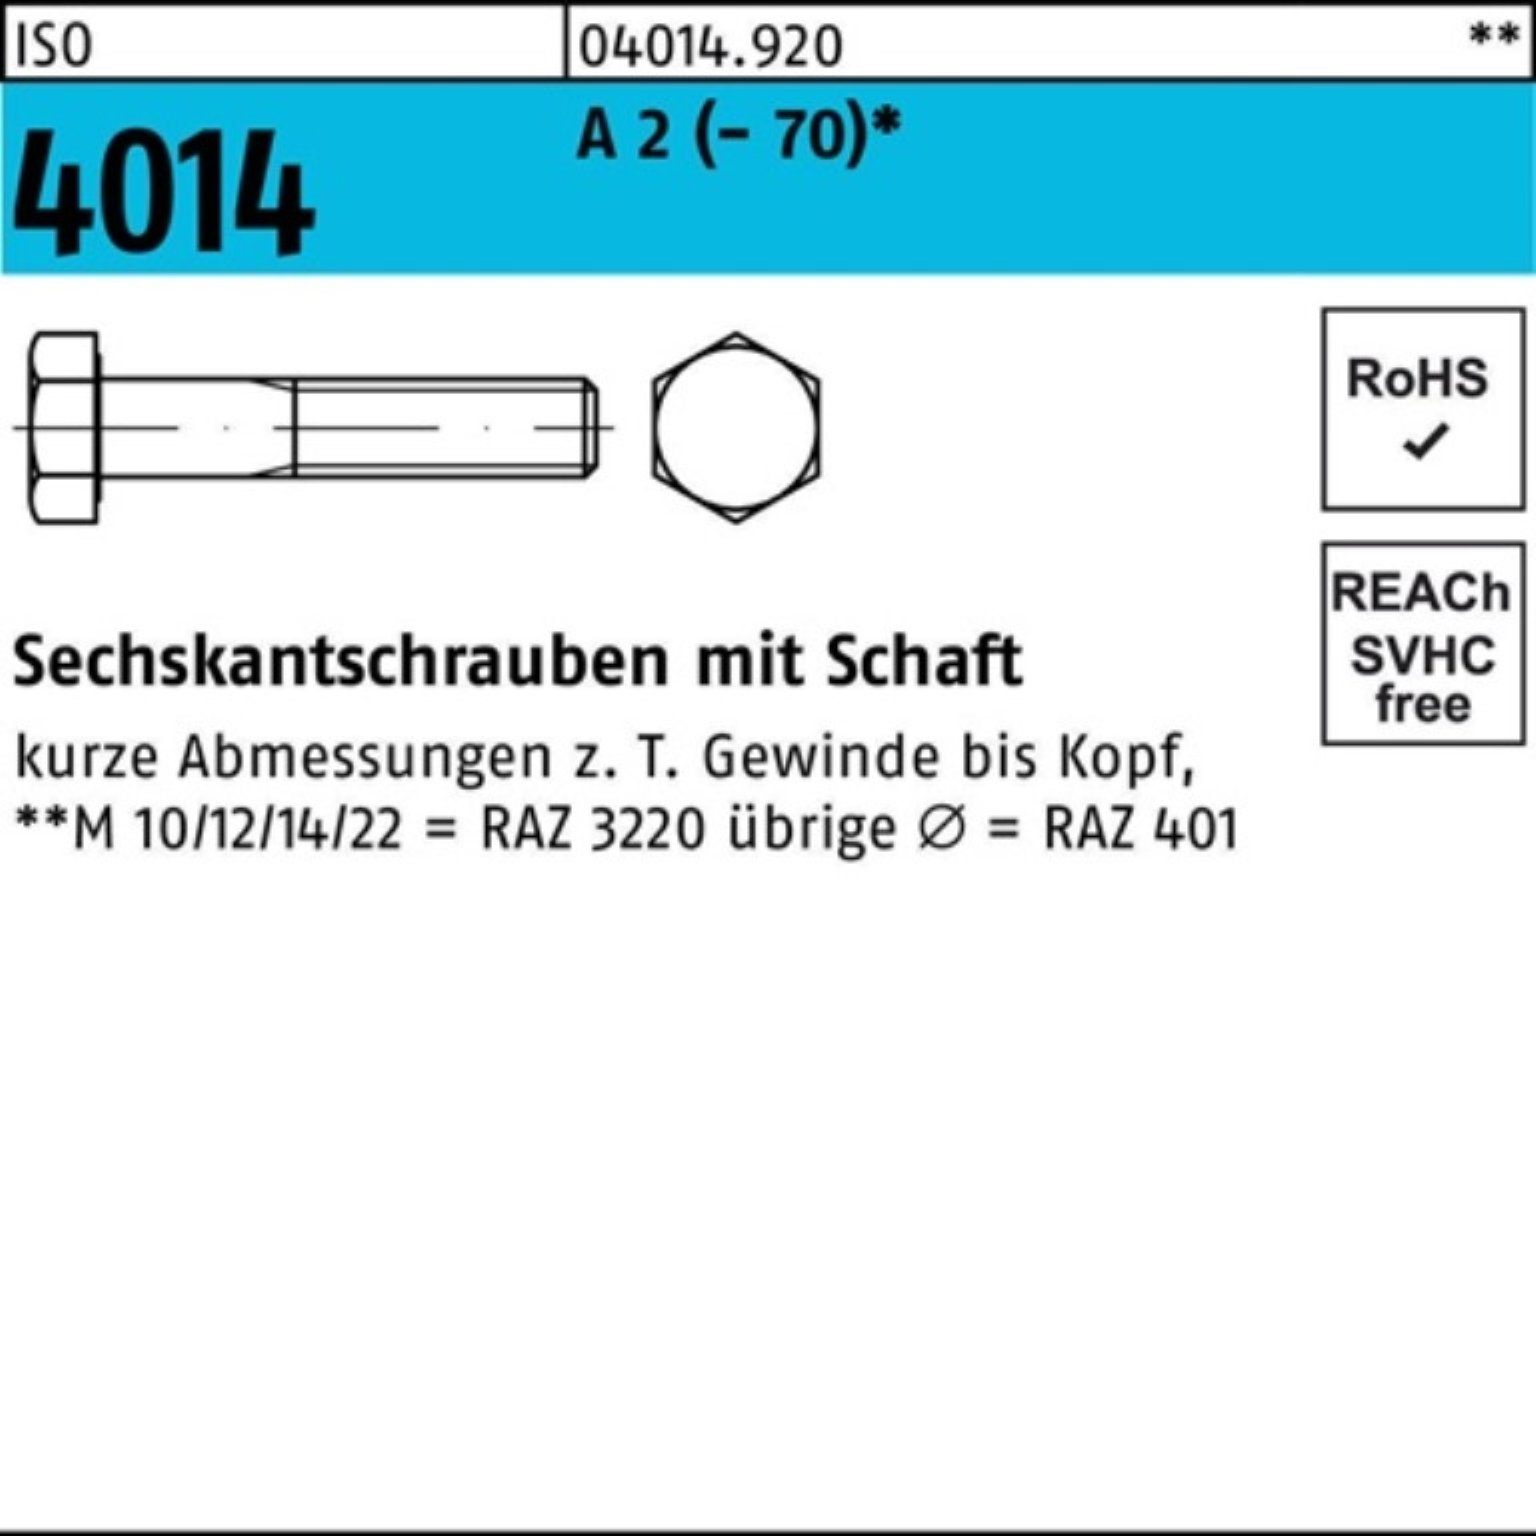 Stü Bufab ISO M20x Pack A 2 75 (70) Sechskantschraube Sechskantschraube 1 4014 Schaft 100er